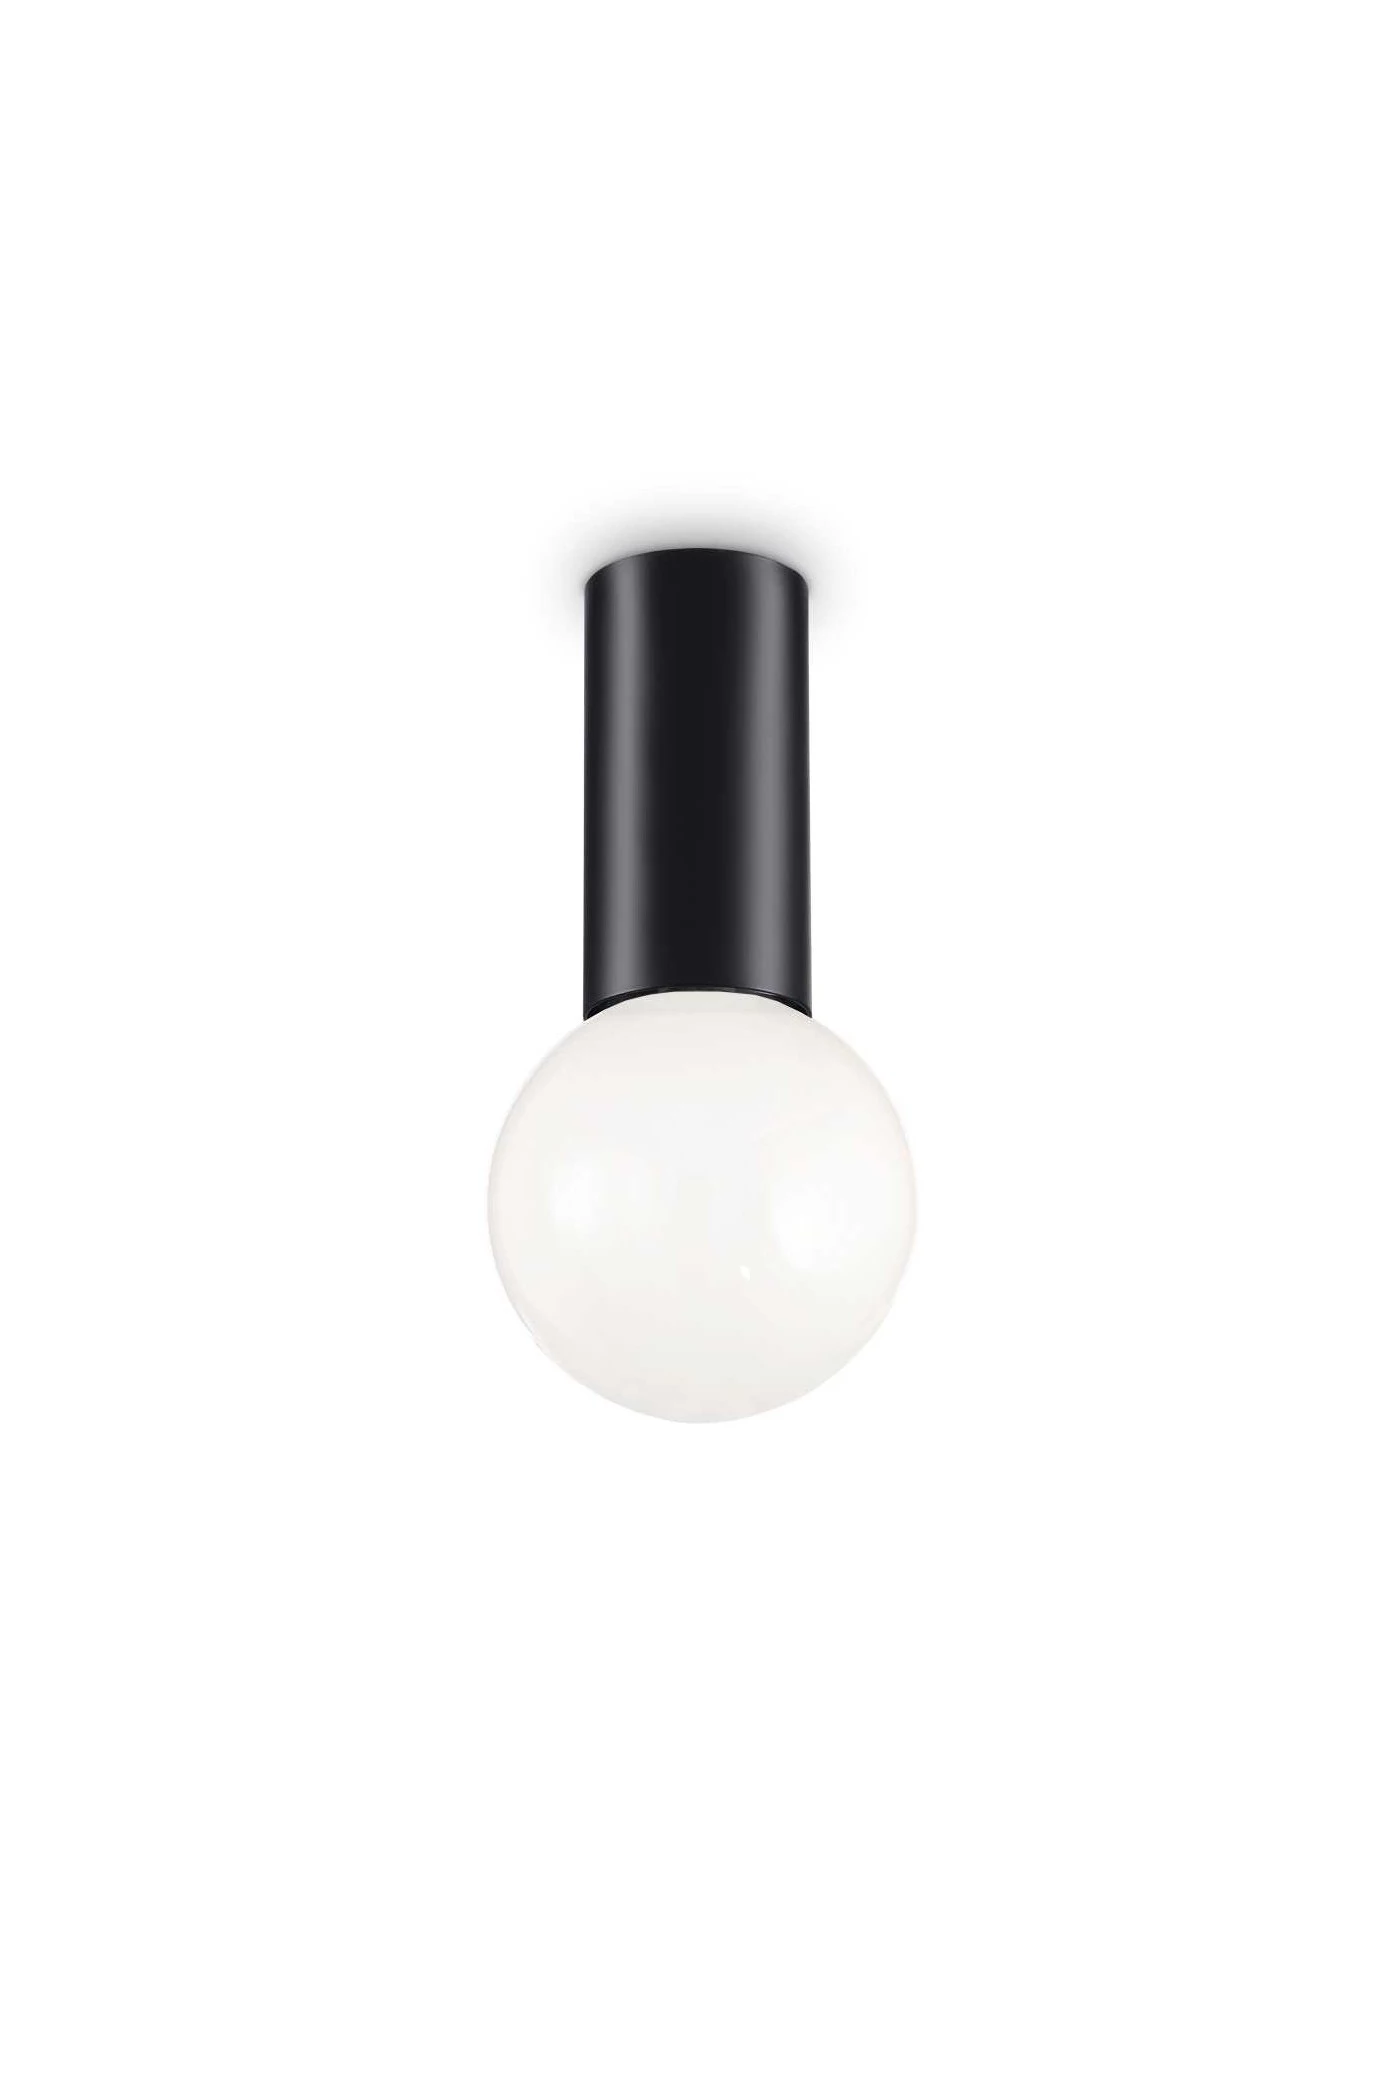   
                        Точковий світильник IDEAL LUX (Італія) 47518    
                         у стилі хай-тек.  
                        Тип джерела світла: cвітлодіодні led, енергозберігаючі, розжарювання.                         Форма: коло.                                                                          фото 1